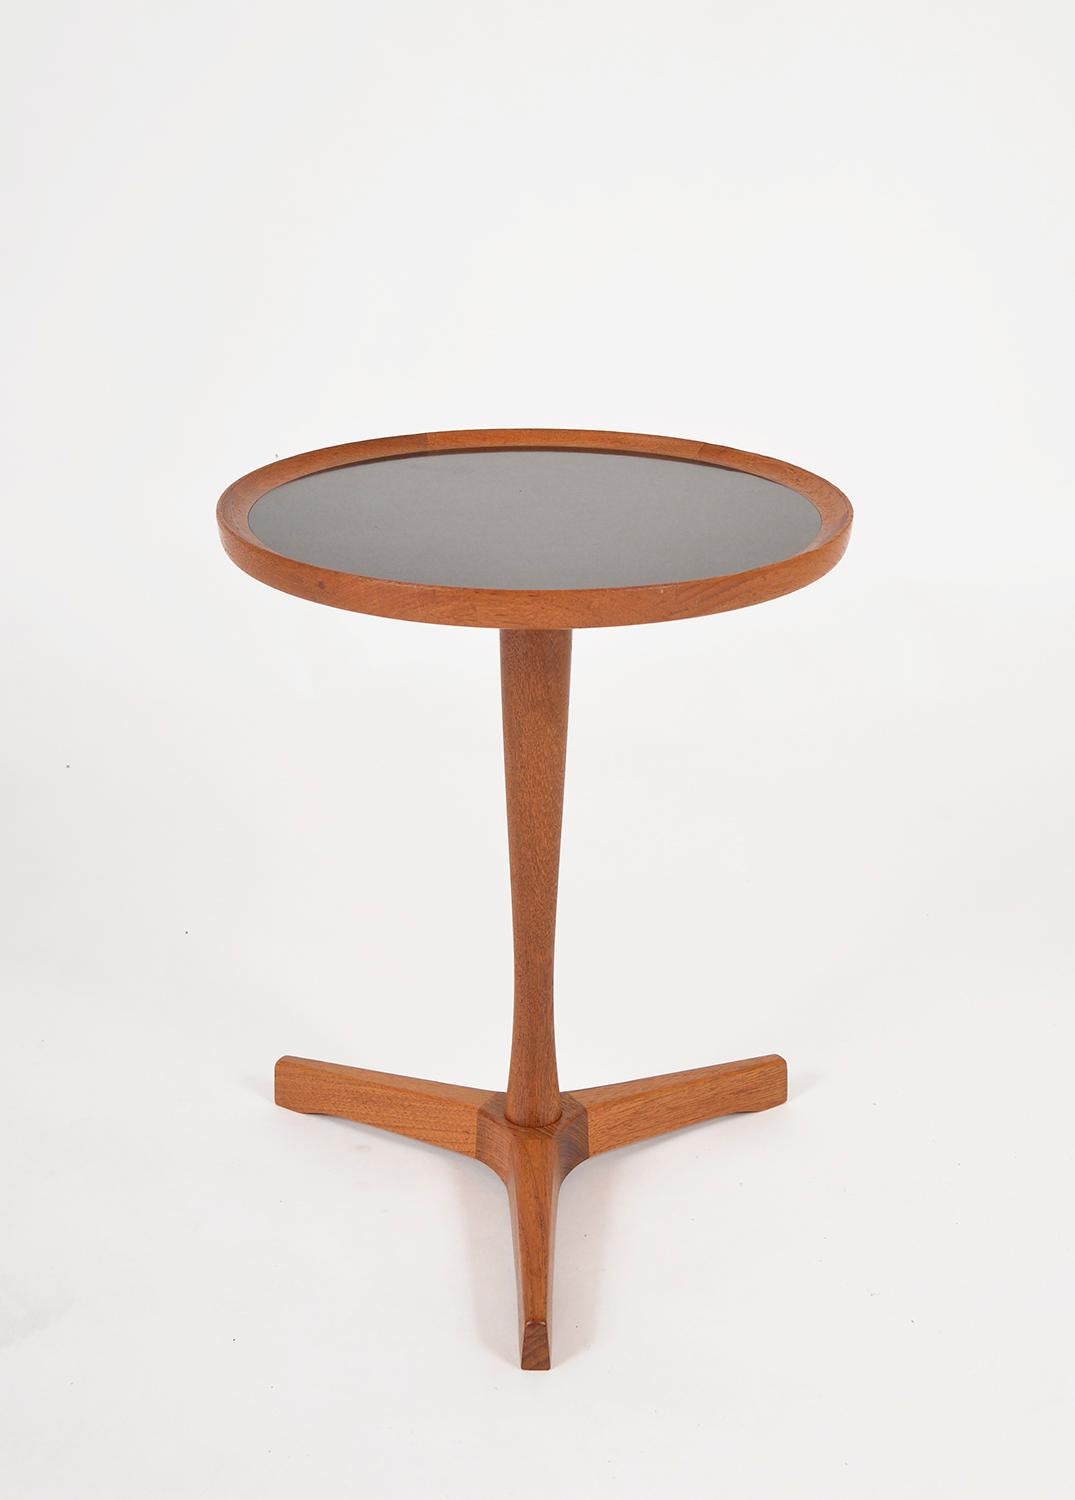 Cette table d'appoint danoise à base tripode aux proportions parfaites a été conçue par Hans C.I.C. pour Artex. Il s'agit d'un bel exemple de By Design/One Modern. Sa tige et sa base sont en teck massif, et le plateau de la table est incrusté de